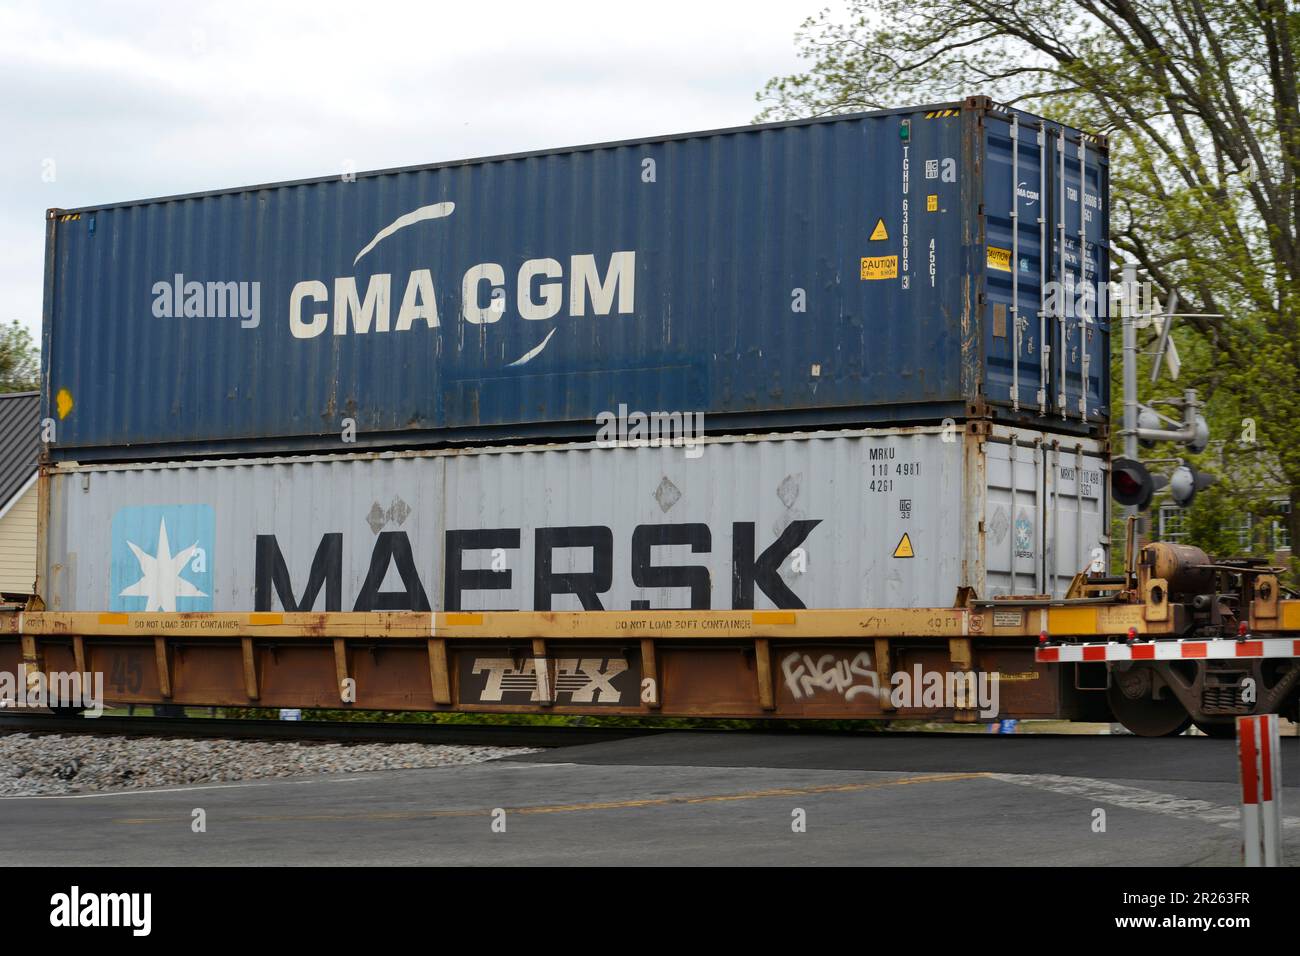 Zu den Containern, die von der Norfolk Southern Railway in den USA gezogen werden, gehören CMA GGM und Maersk. Stockfoto